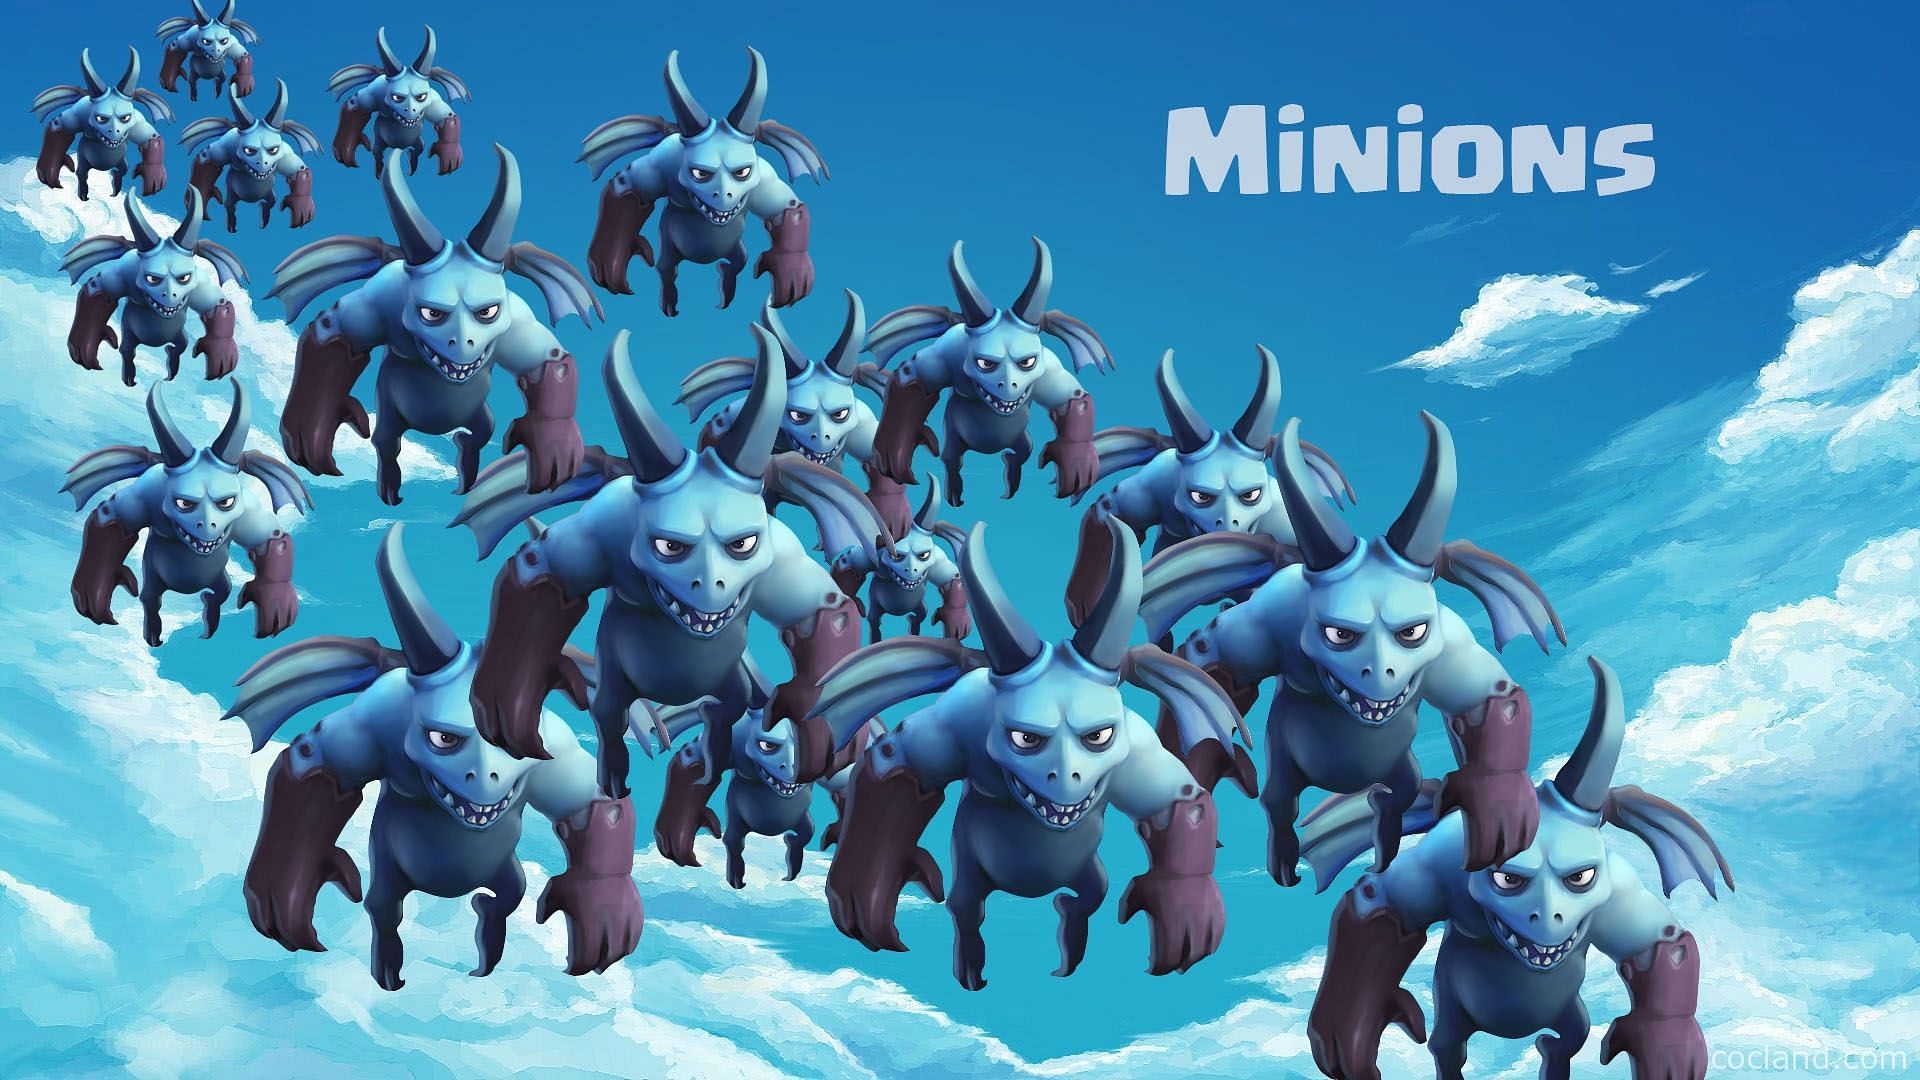 Minions (Image via CocLand)